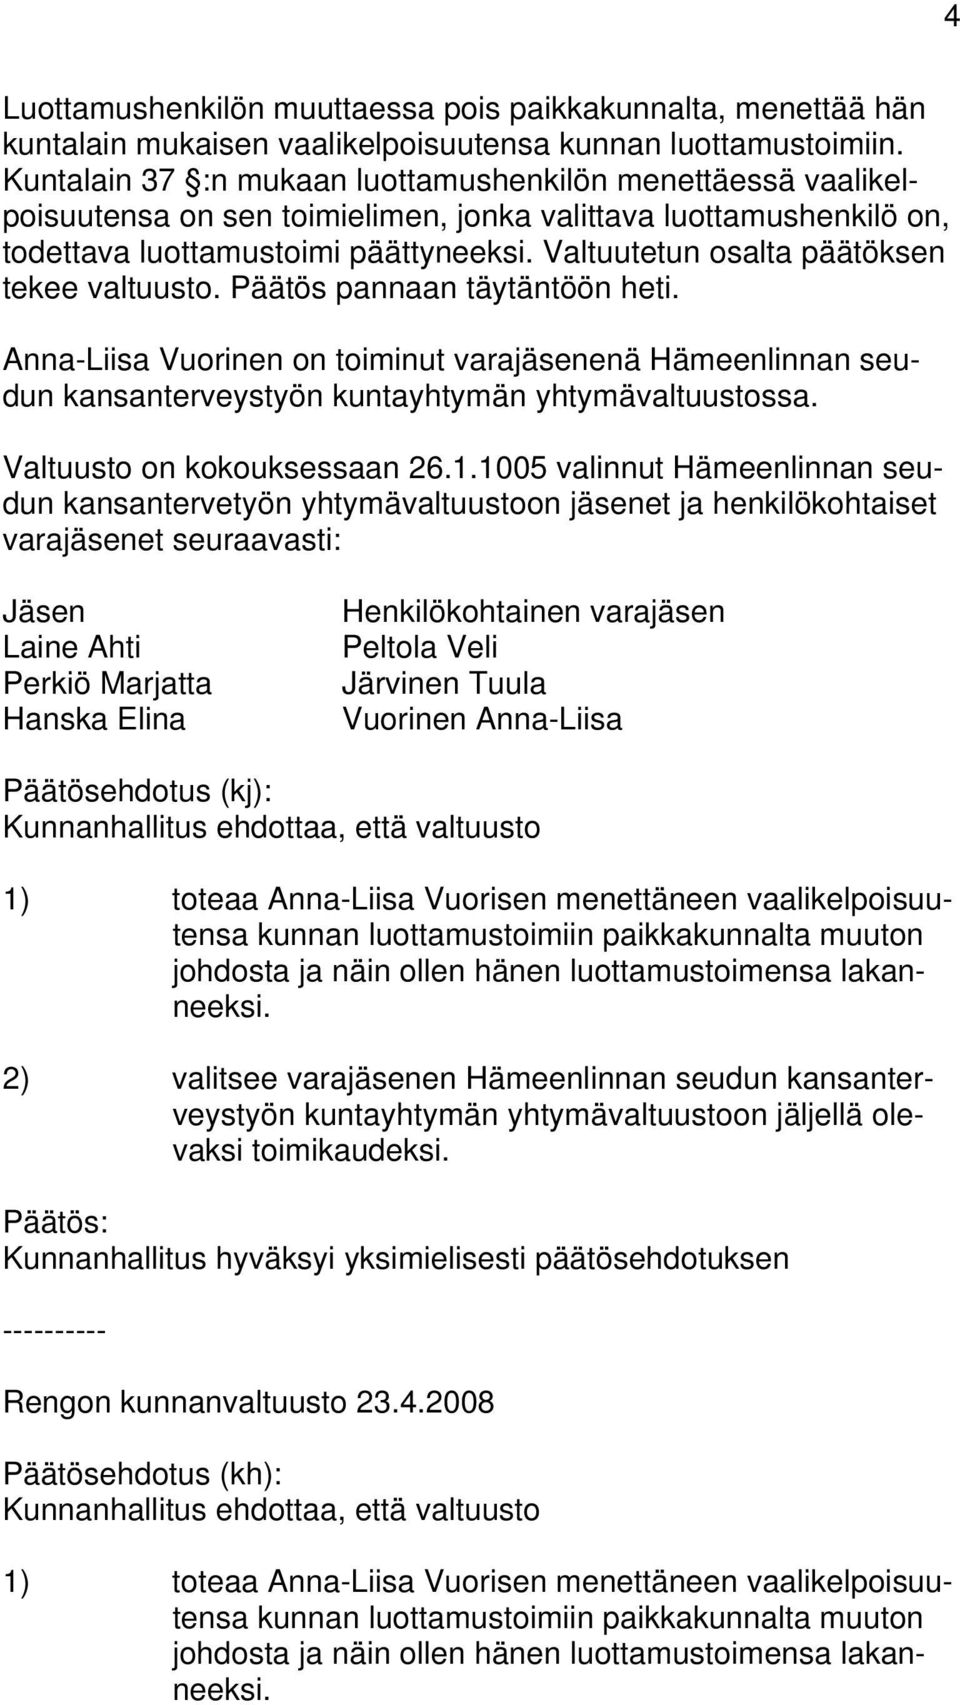 Valtuutetun osalta päätöksen tekee valtuusto. Päätös pannaan täytäntöön heti. Anna-Liisa Vuorinen on toiminut varajäsenenä Hämeenlinnan seudun kansanterveystyön kuntayhtymän yhtymävaltuustossa.